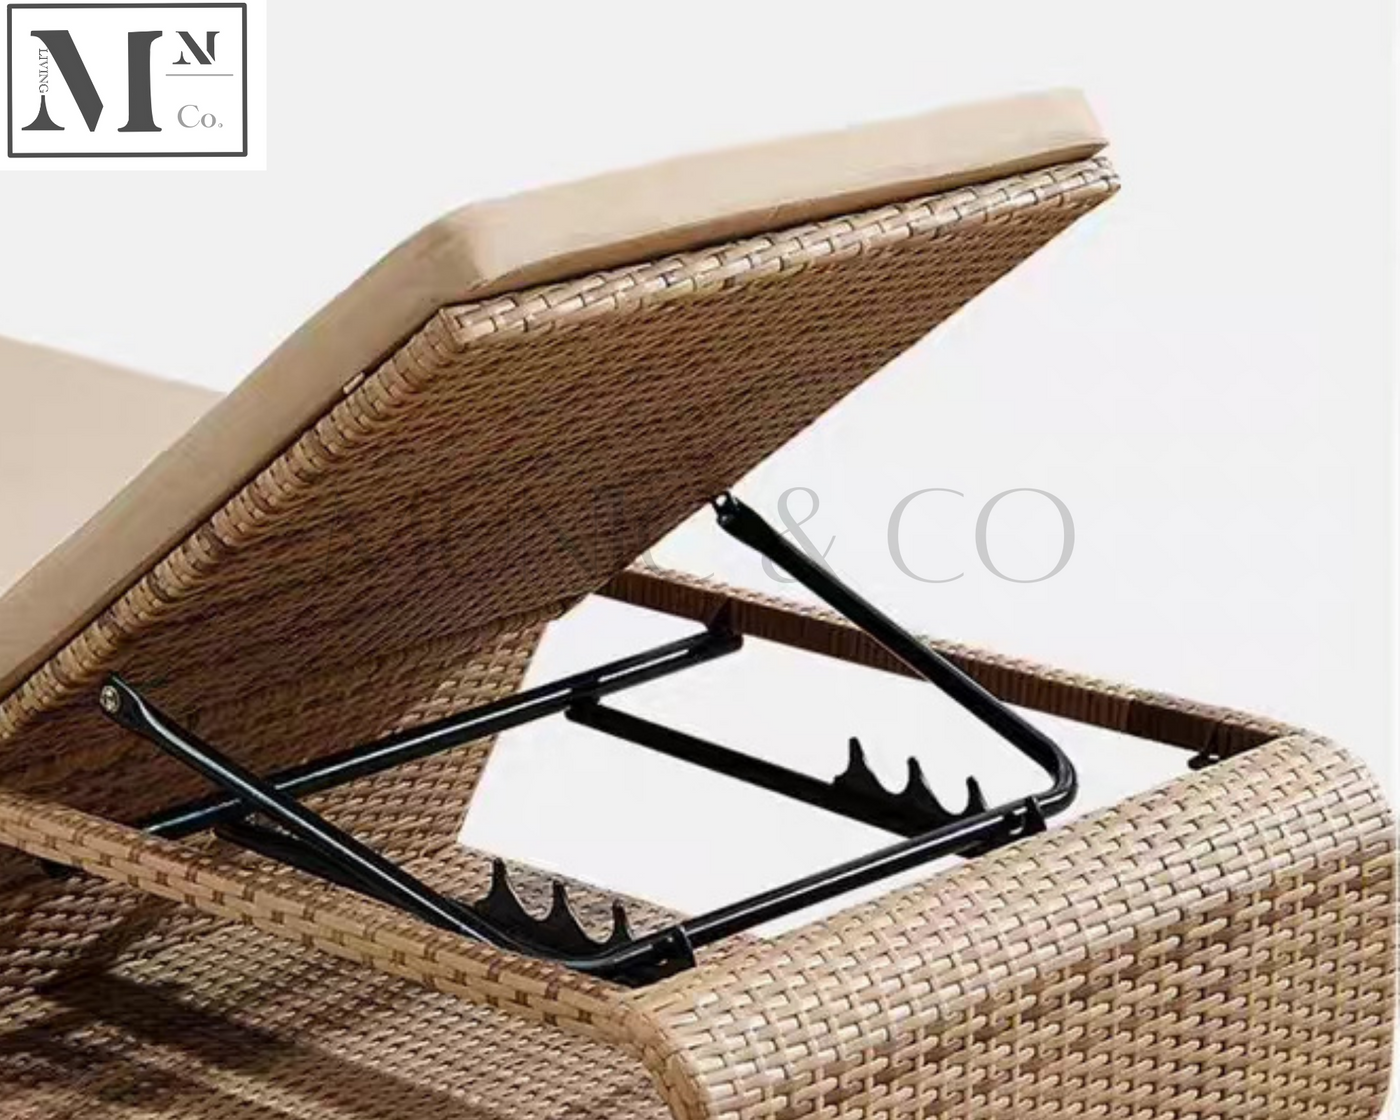 FABIANO Outdoor Lounge Sofa in PE Rattan Weave